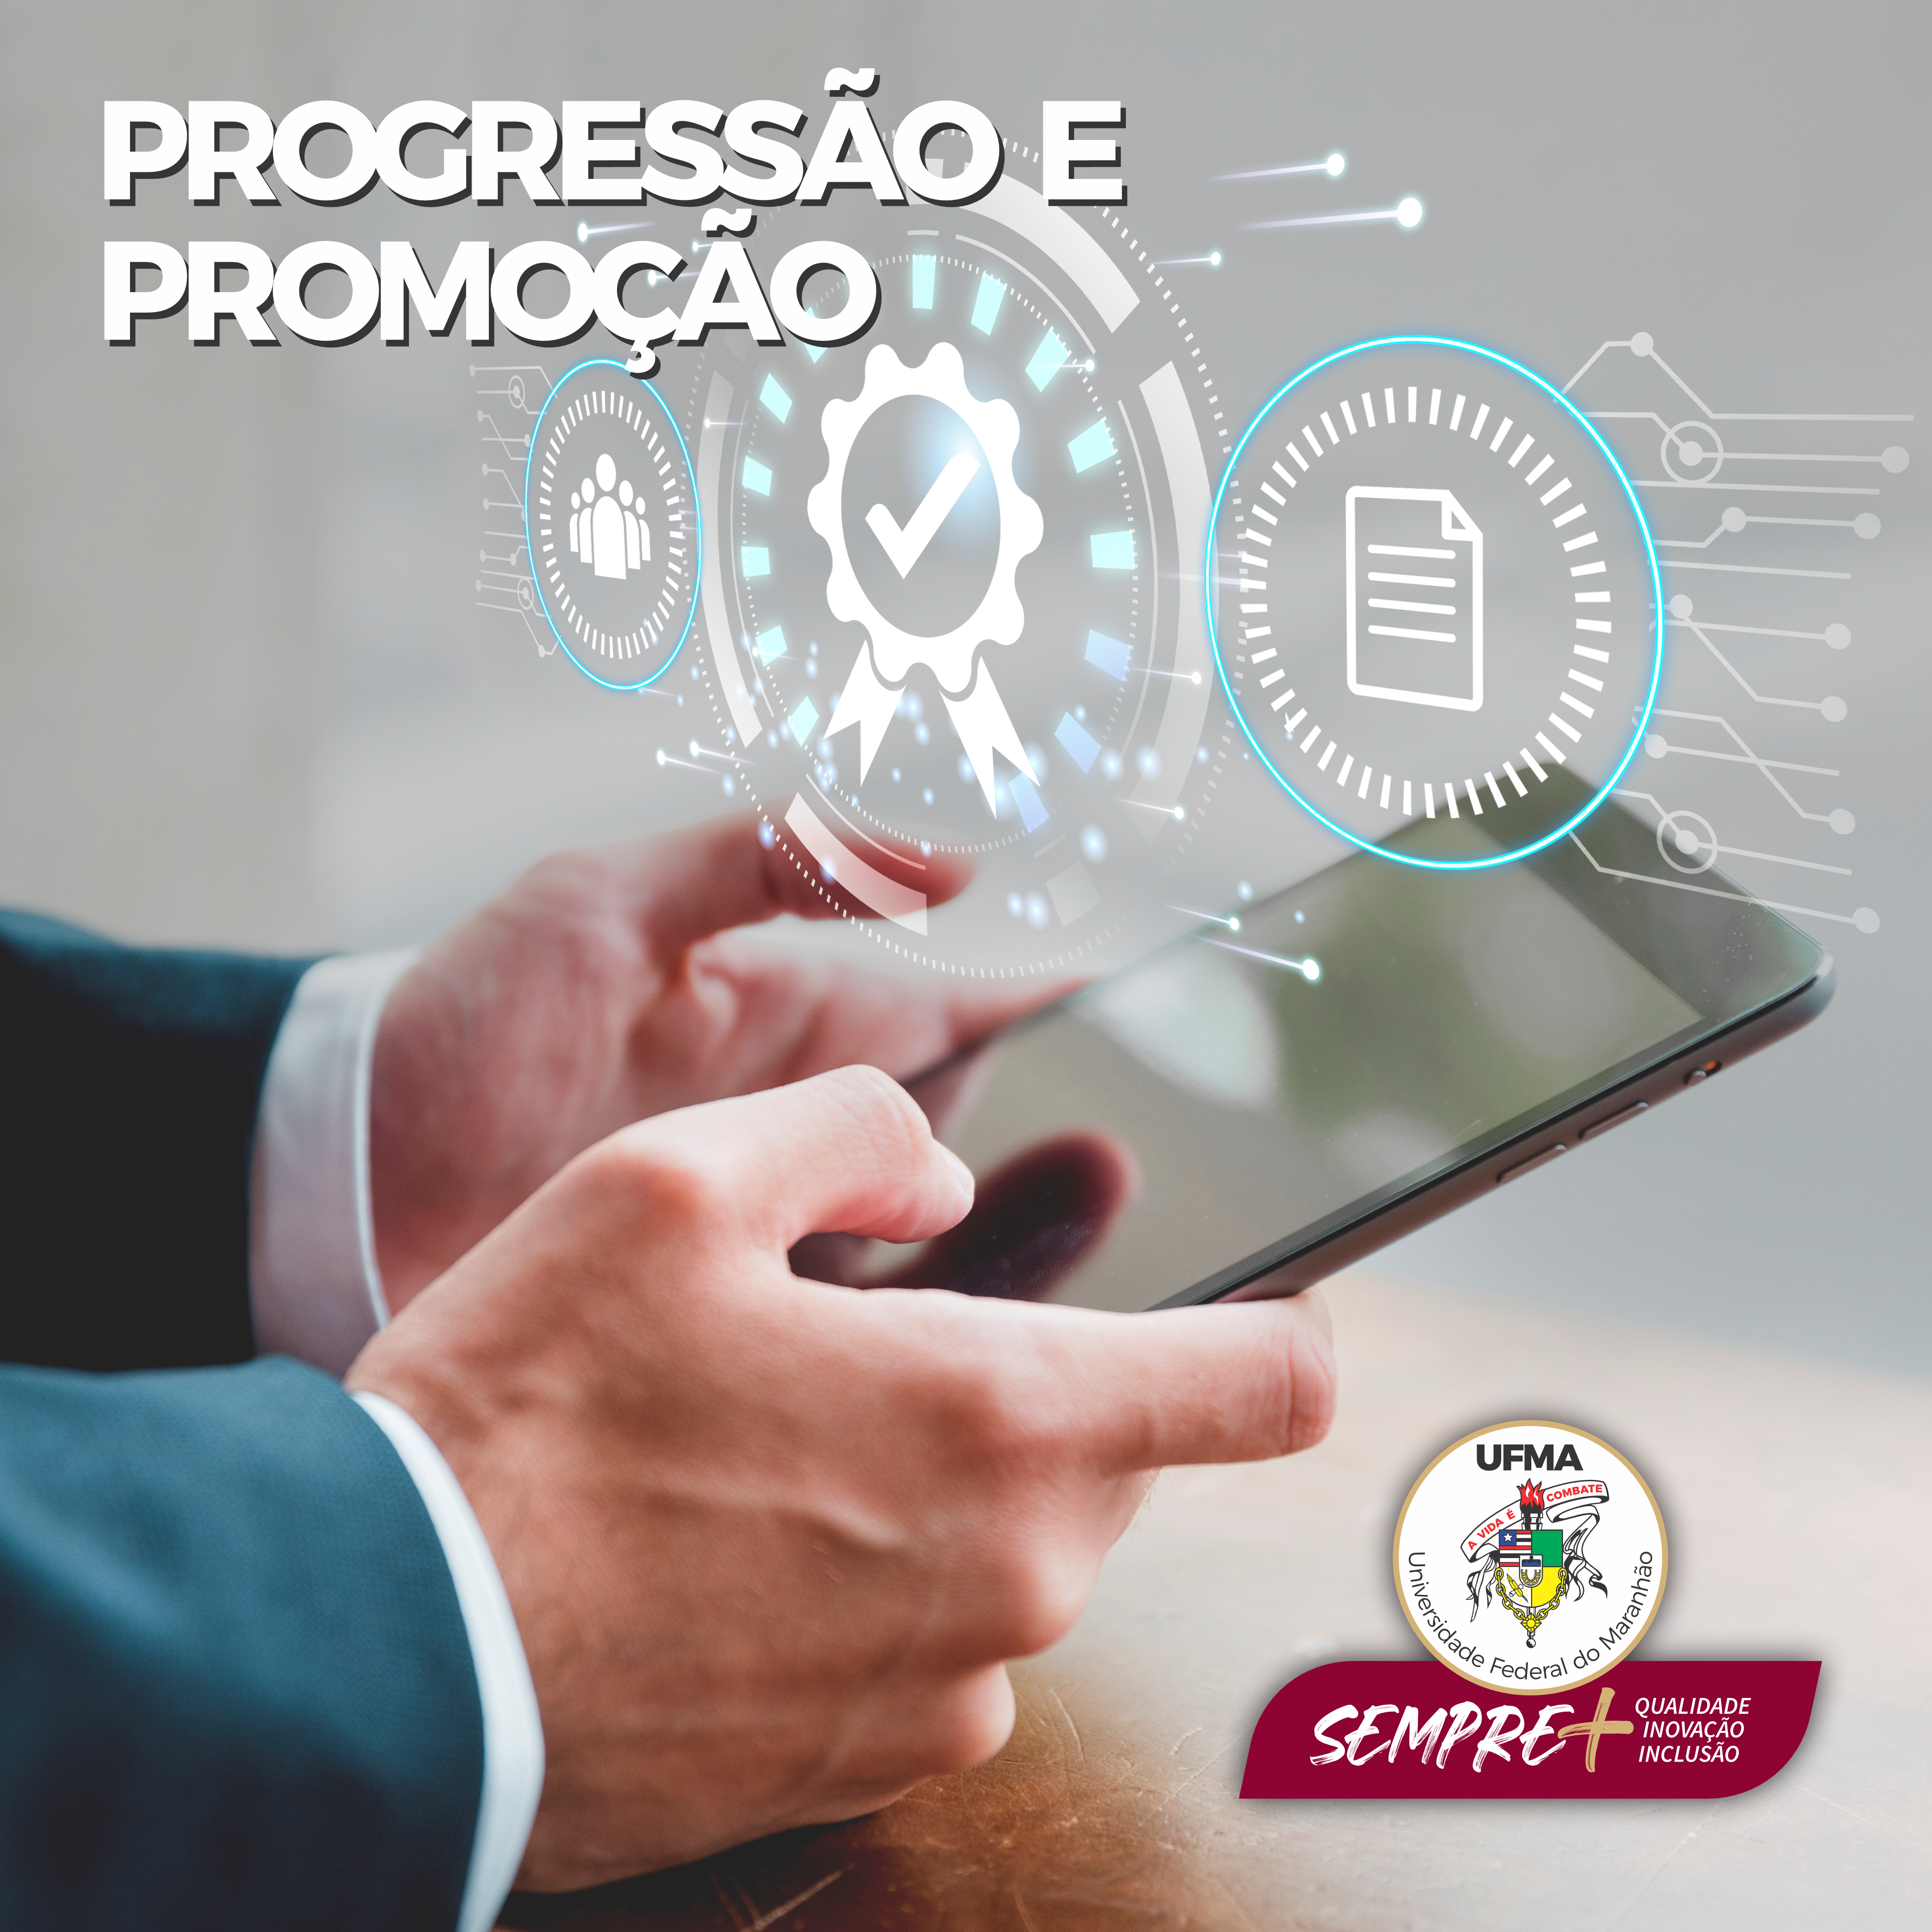 UFMA moderniza e implementa sistema de automação para progressão e promoção docente